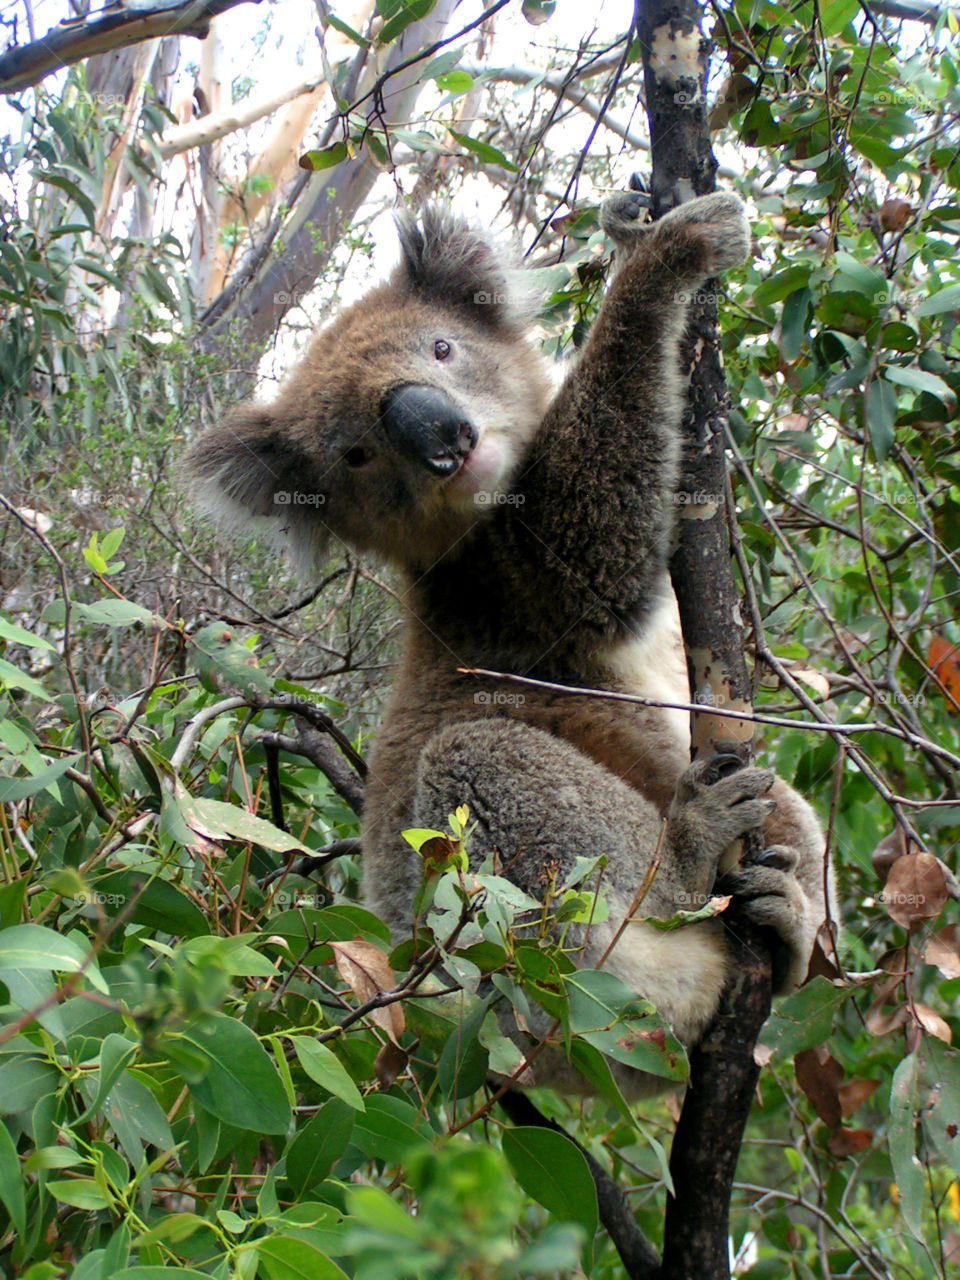 Koala pose